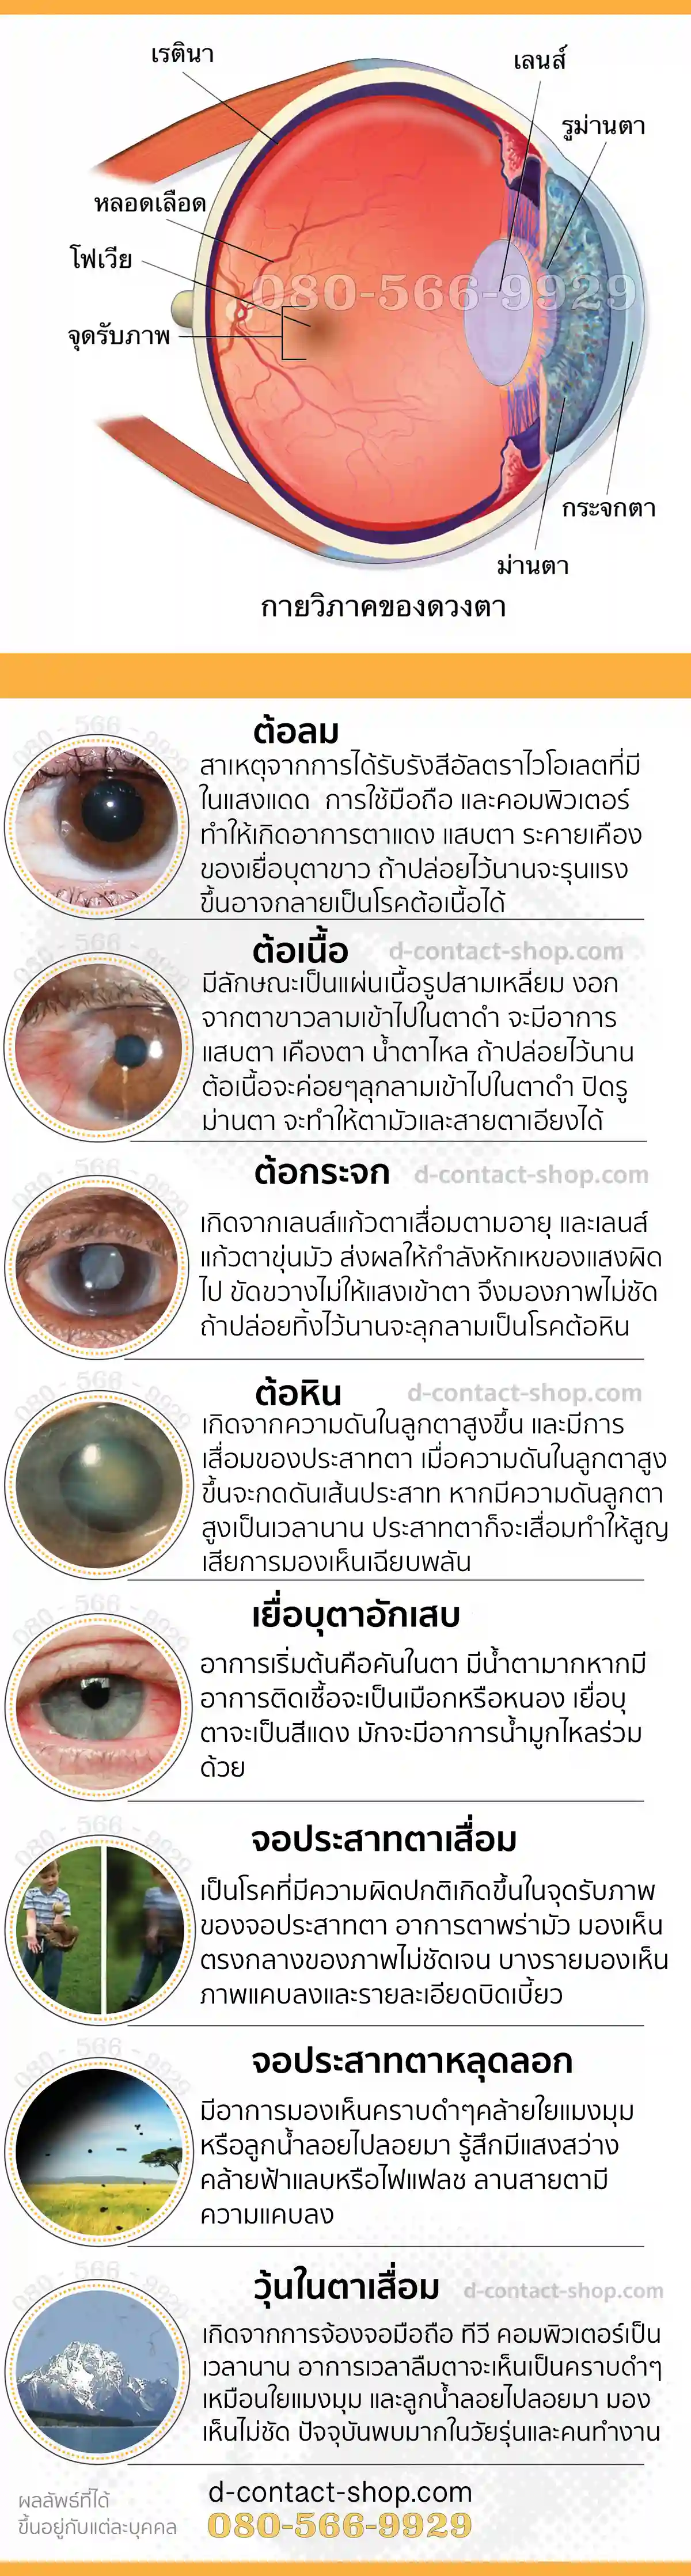 ปัญหาสุขภาพสายตา